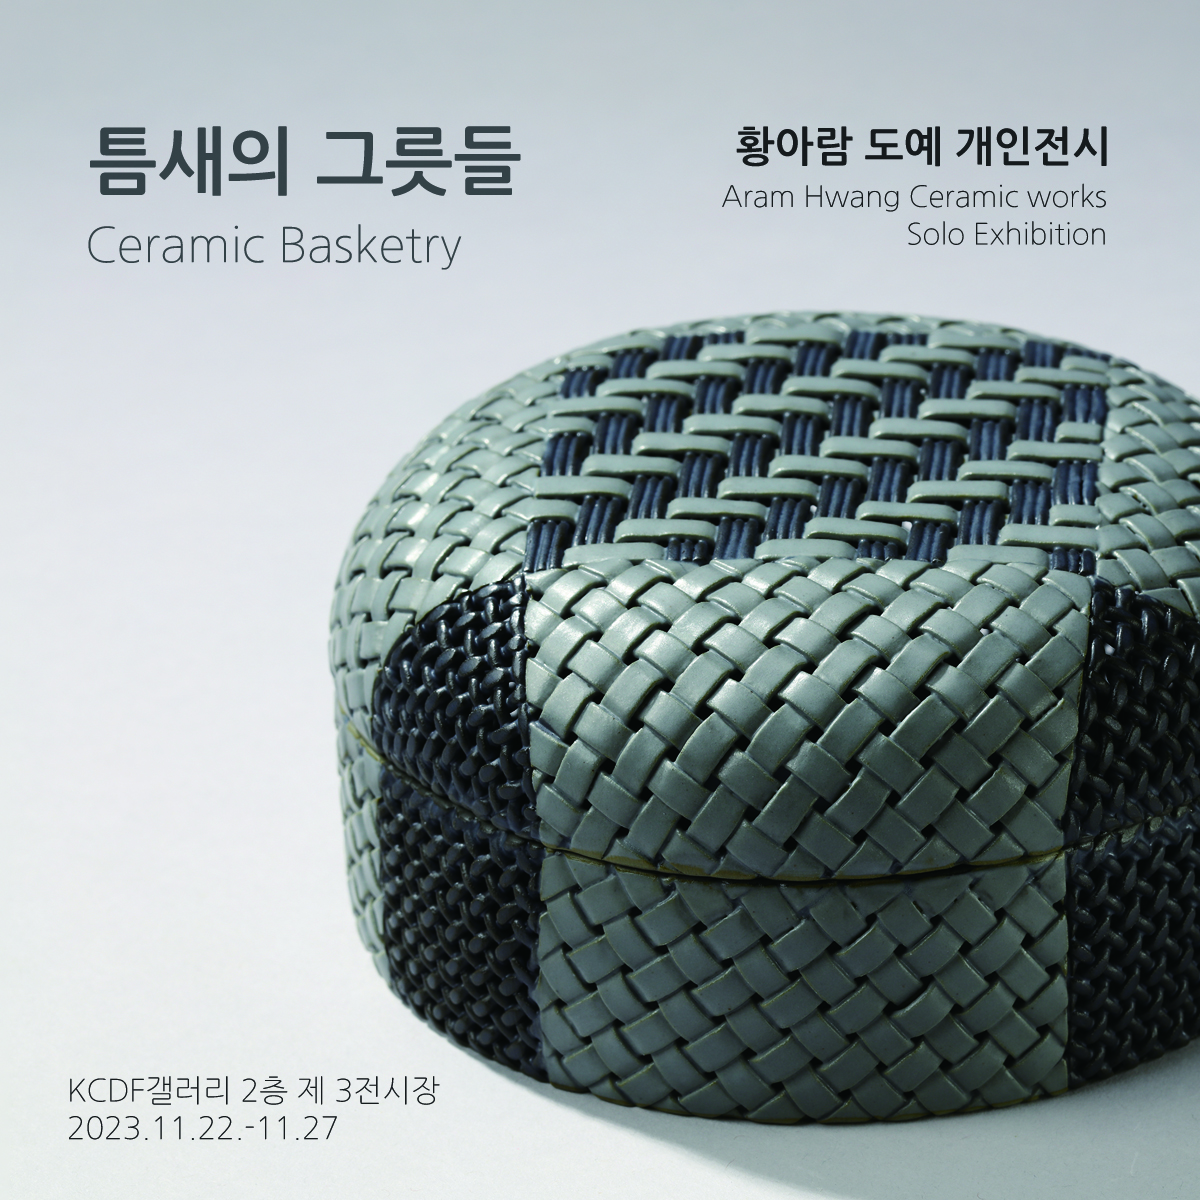 틈새의 그릇들 Ceramic Basketry 황아람 도예 개인전시 Aram Hwang Ceramic works Solo Exhibition KCDF갤러리 2층 제 3전시장 2023.11.22-11.27